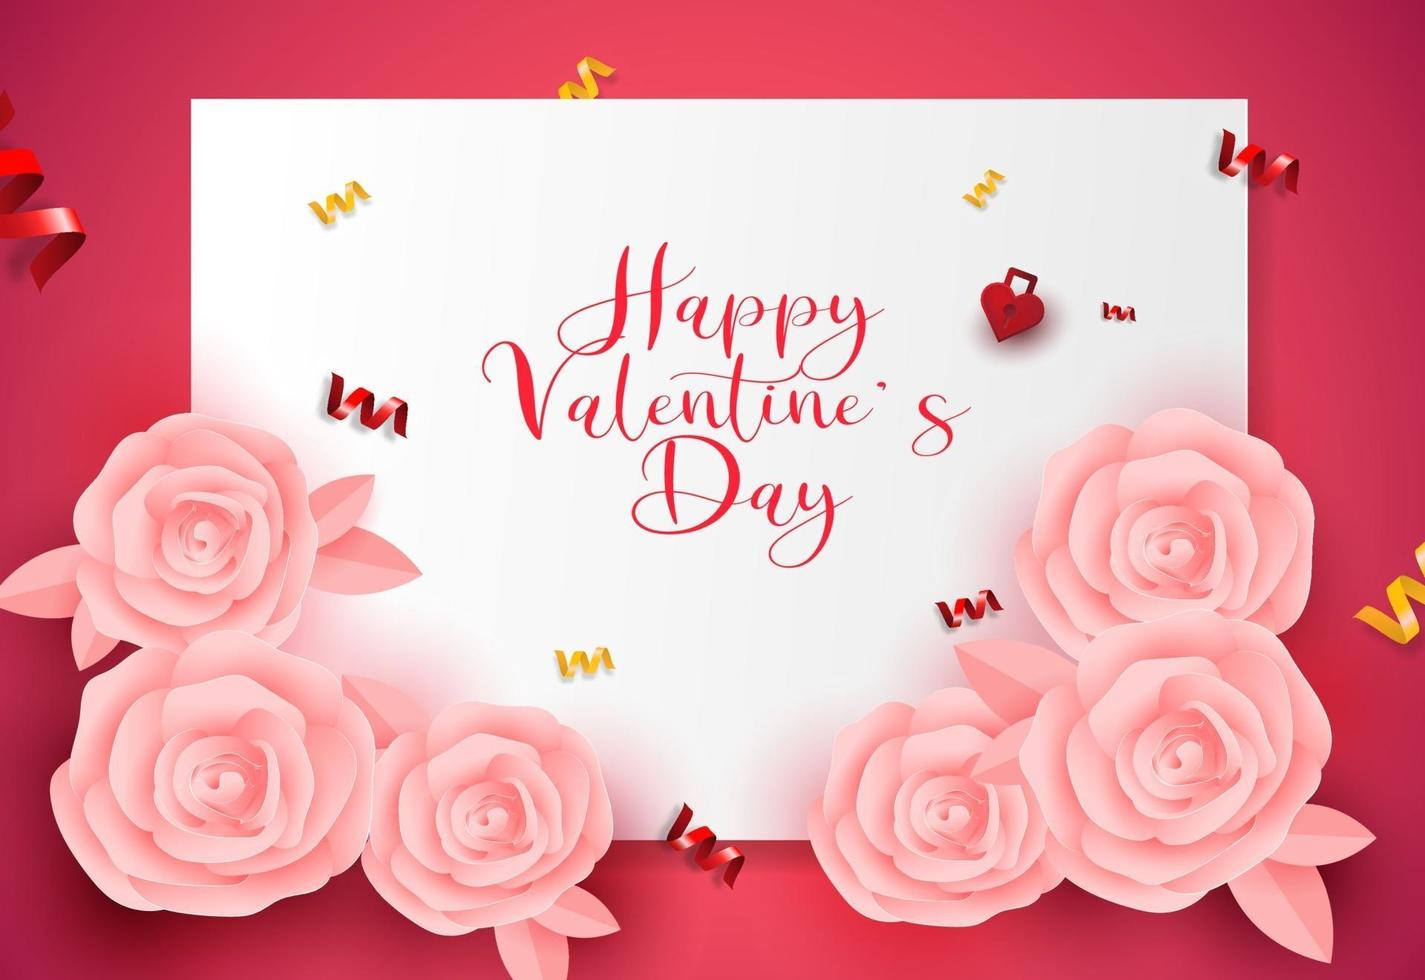 Banner de venta de diseño de tarjeta de felicitación de San Valentín, fondo de cartel con forma de origami de rosas rosadas. vector